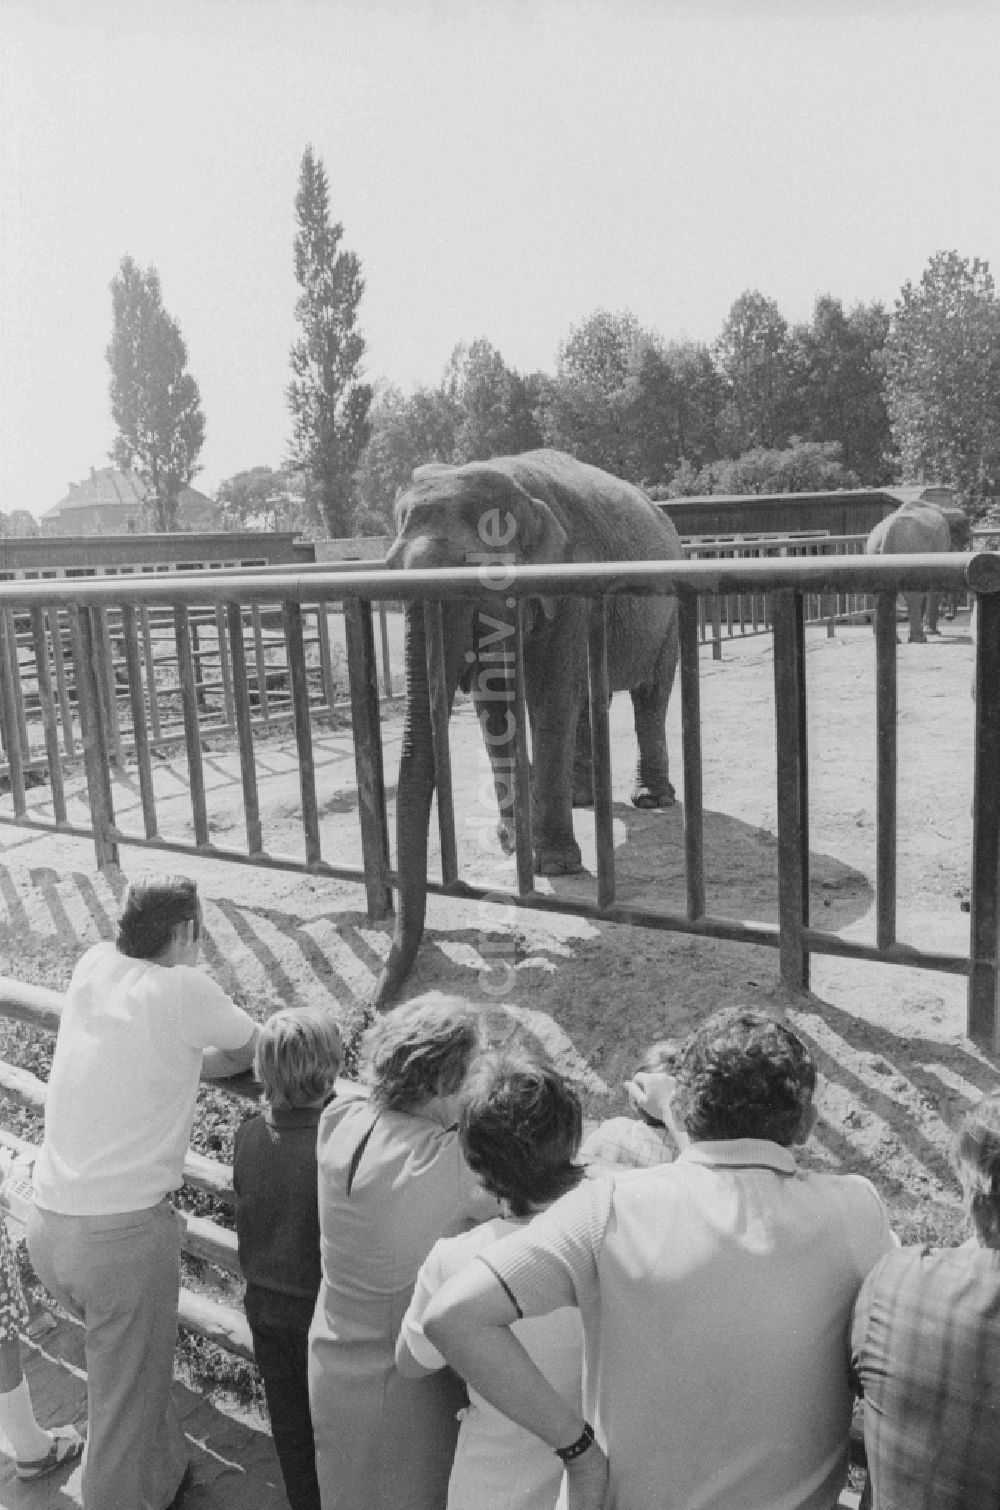 DDR-Fotoarchiv: Berlin - Besucher im Tierpark Berlin - Friedrichsfelde am Elefantengehege in Berlin, der ehemaligen Hauptstadt der DDR, Deutsche Demokratische Republik